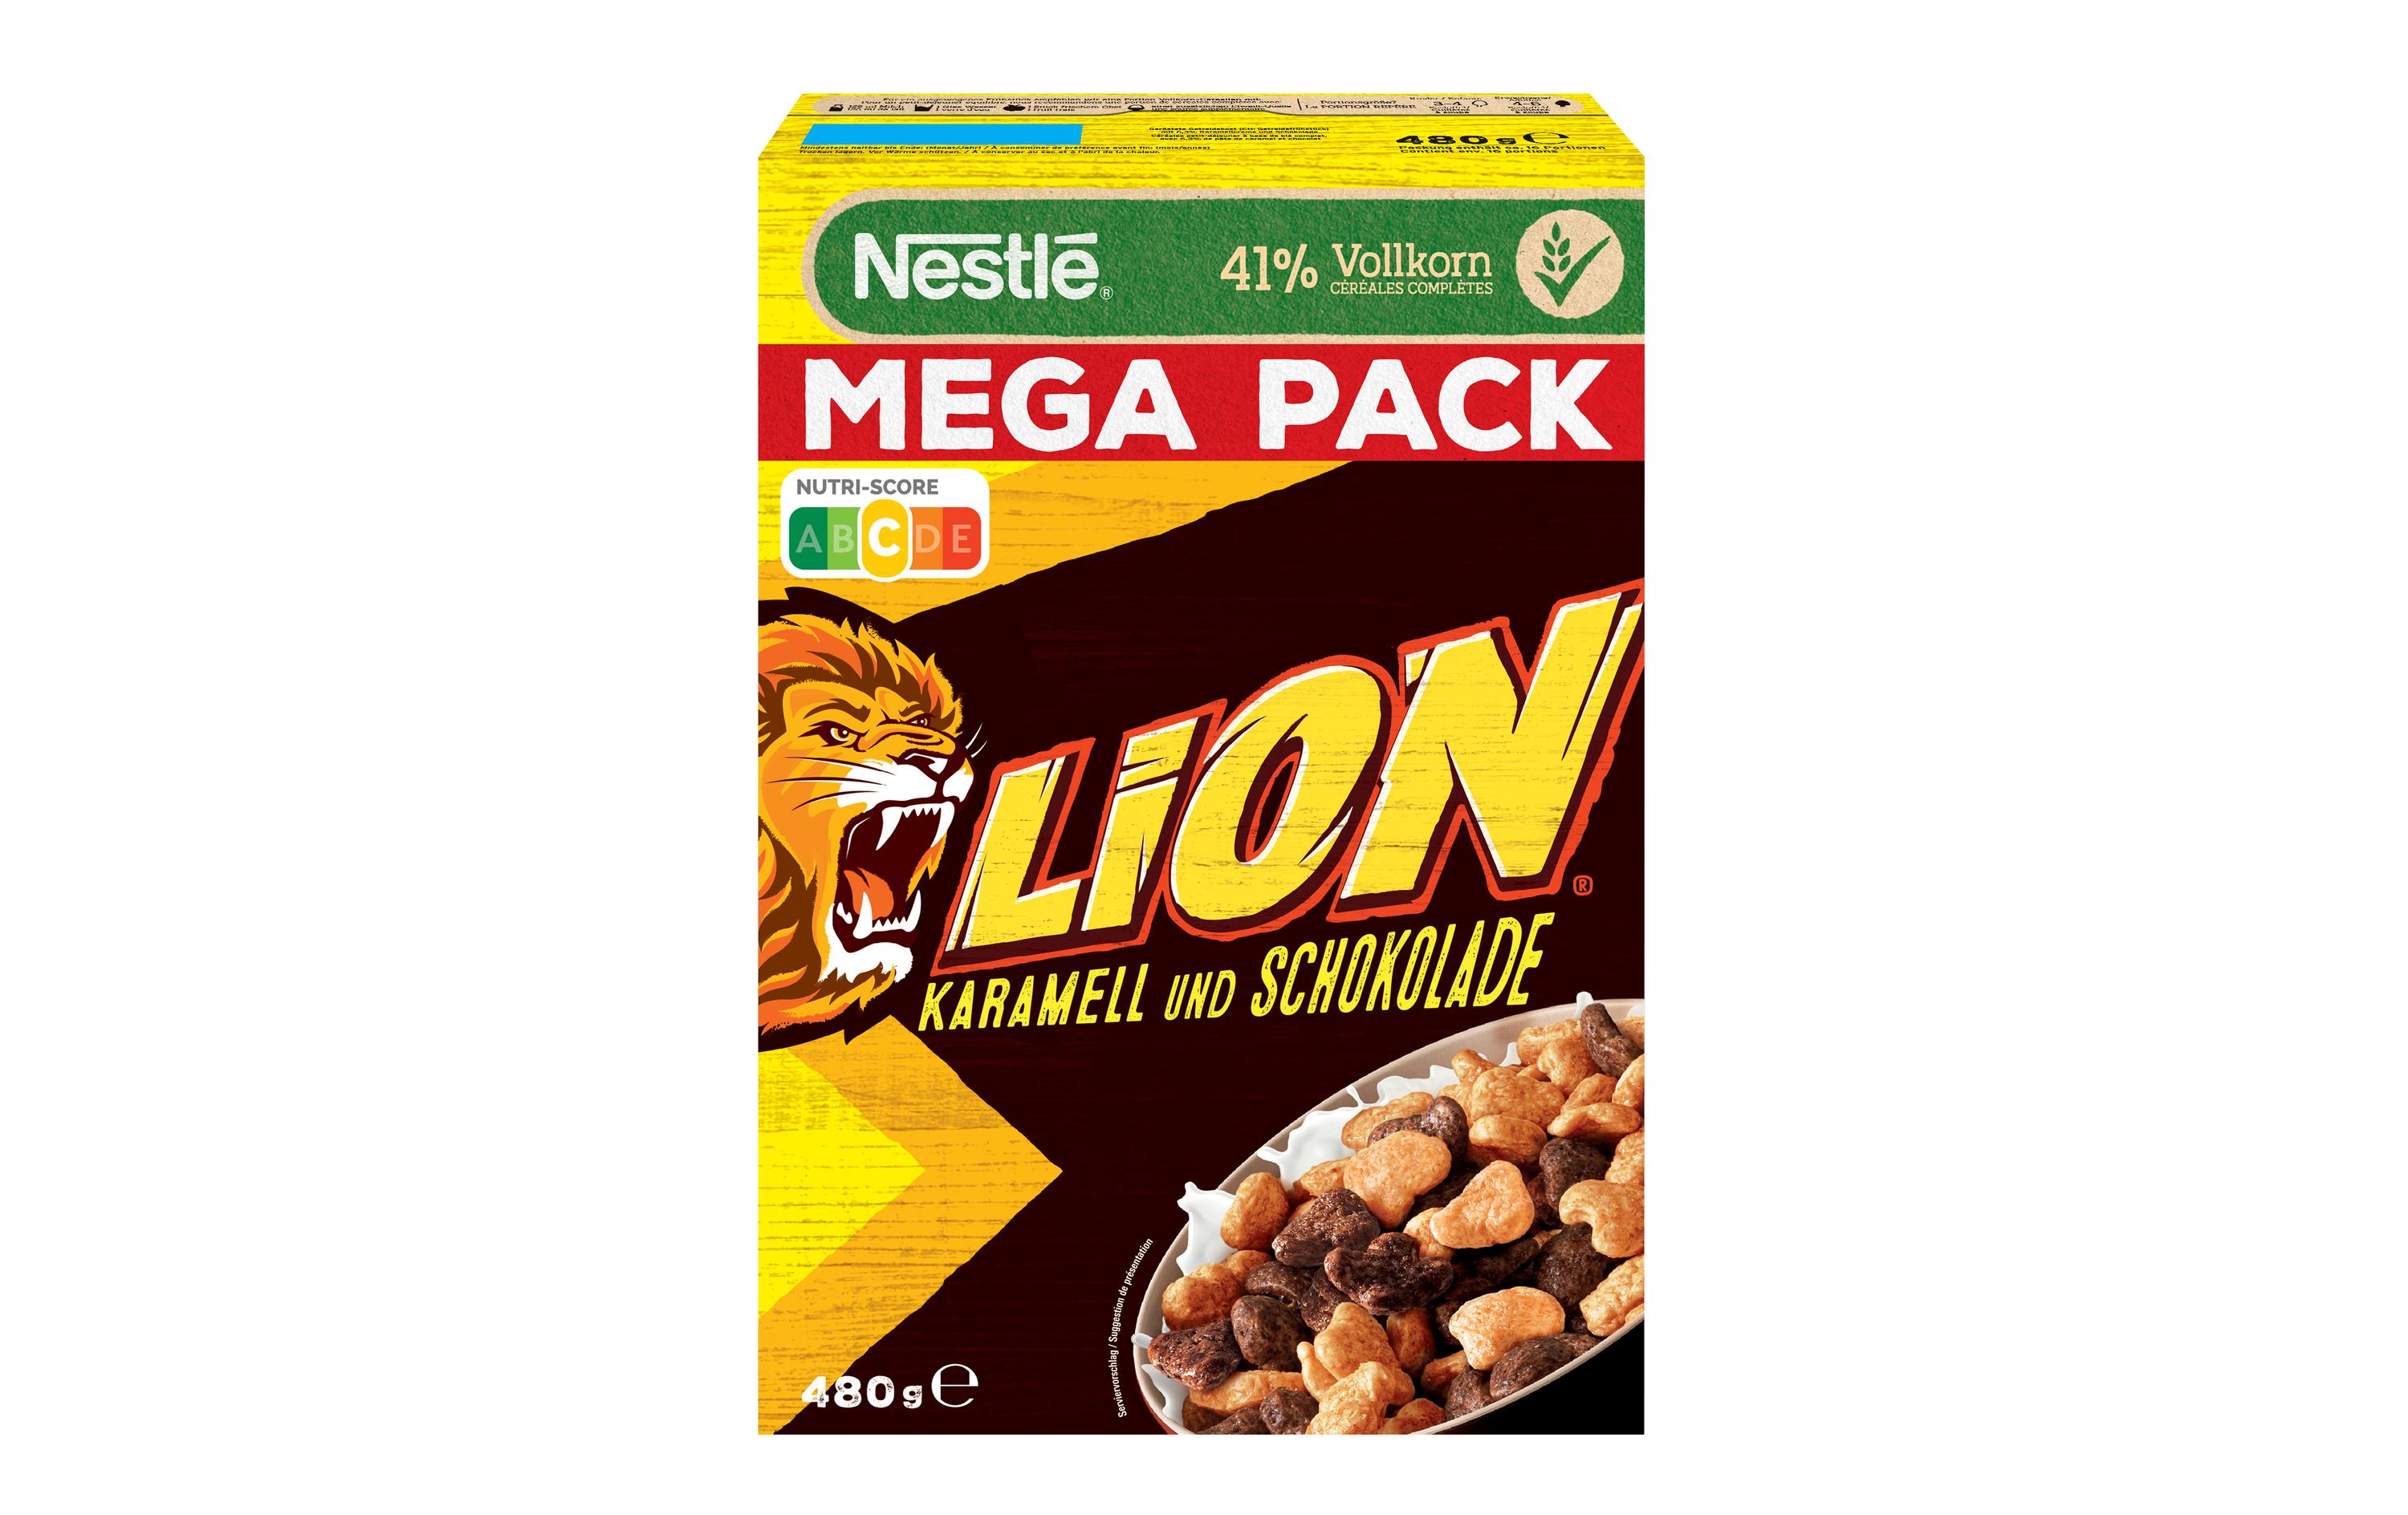 Nestlé Cerealien Lion Cerealien Karamell und Schoko 480 g